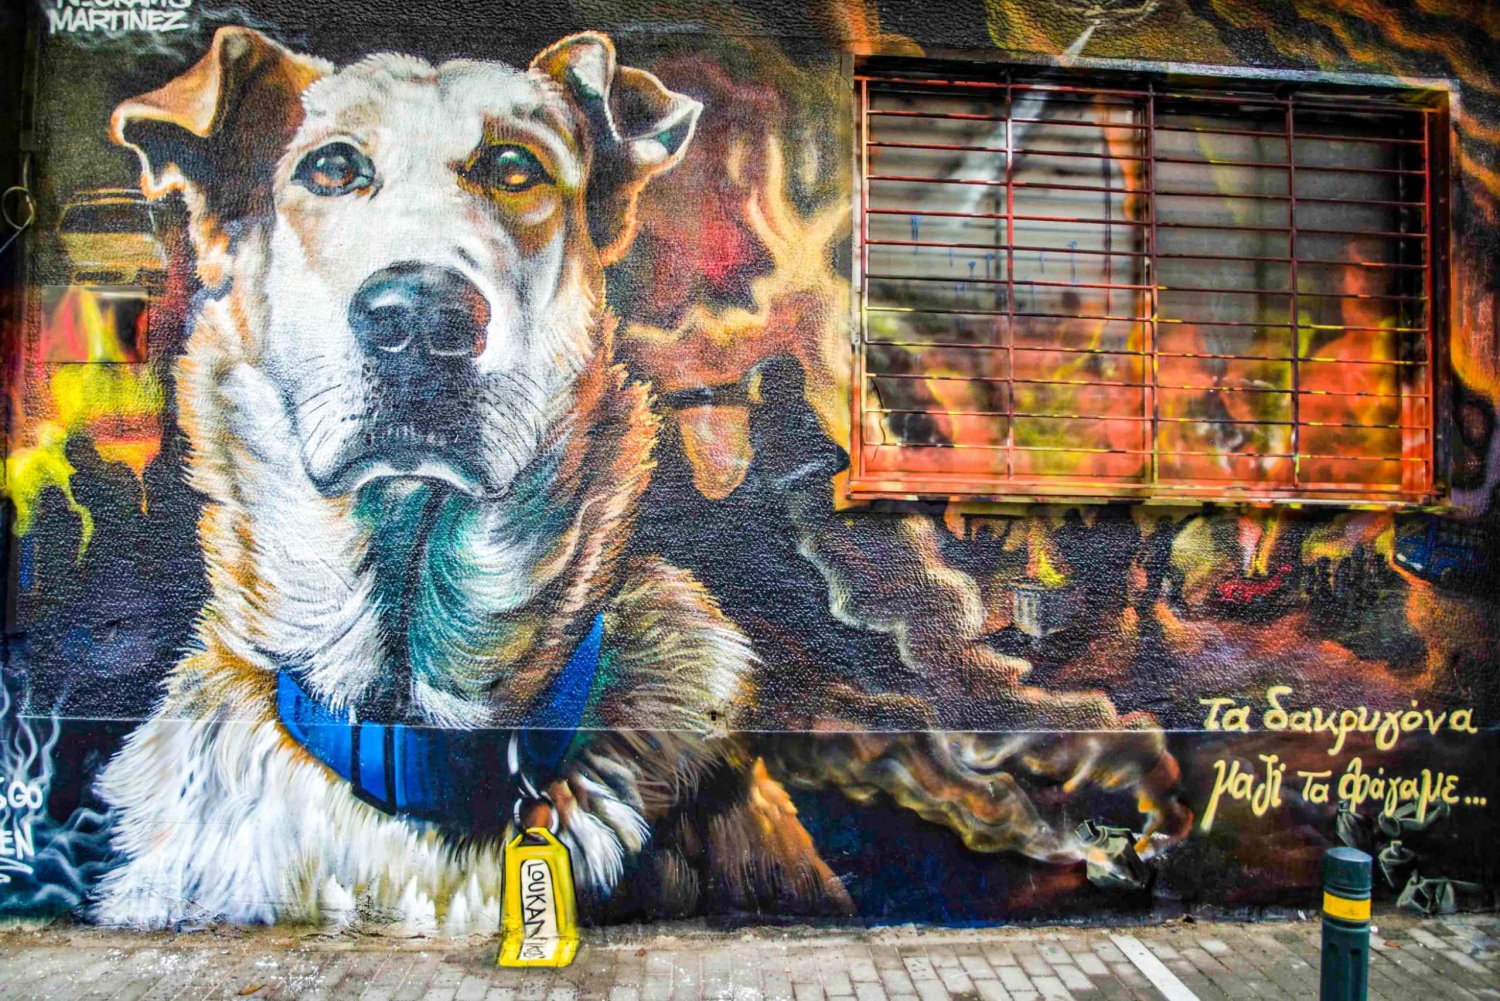 Athens Original Street Art Tour